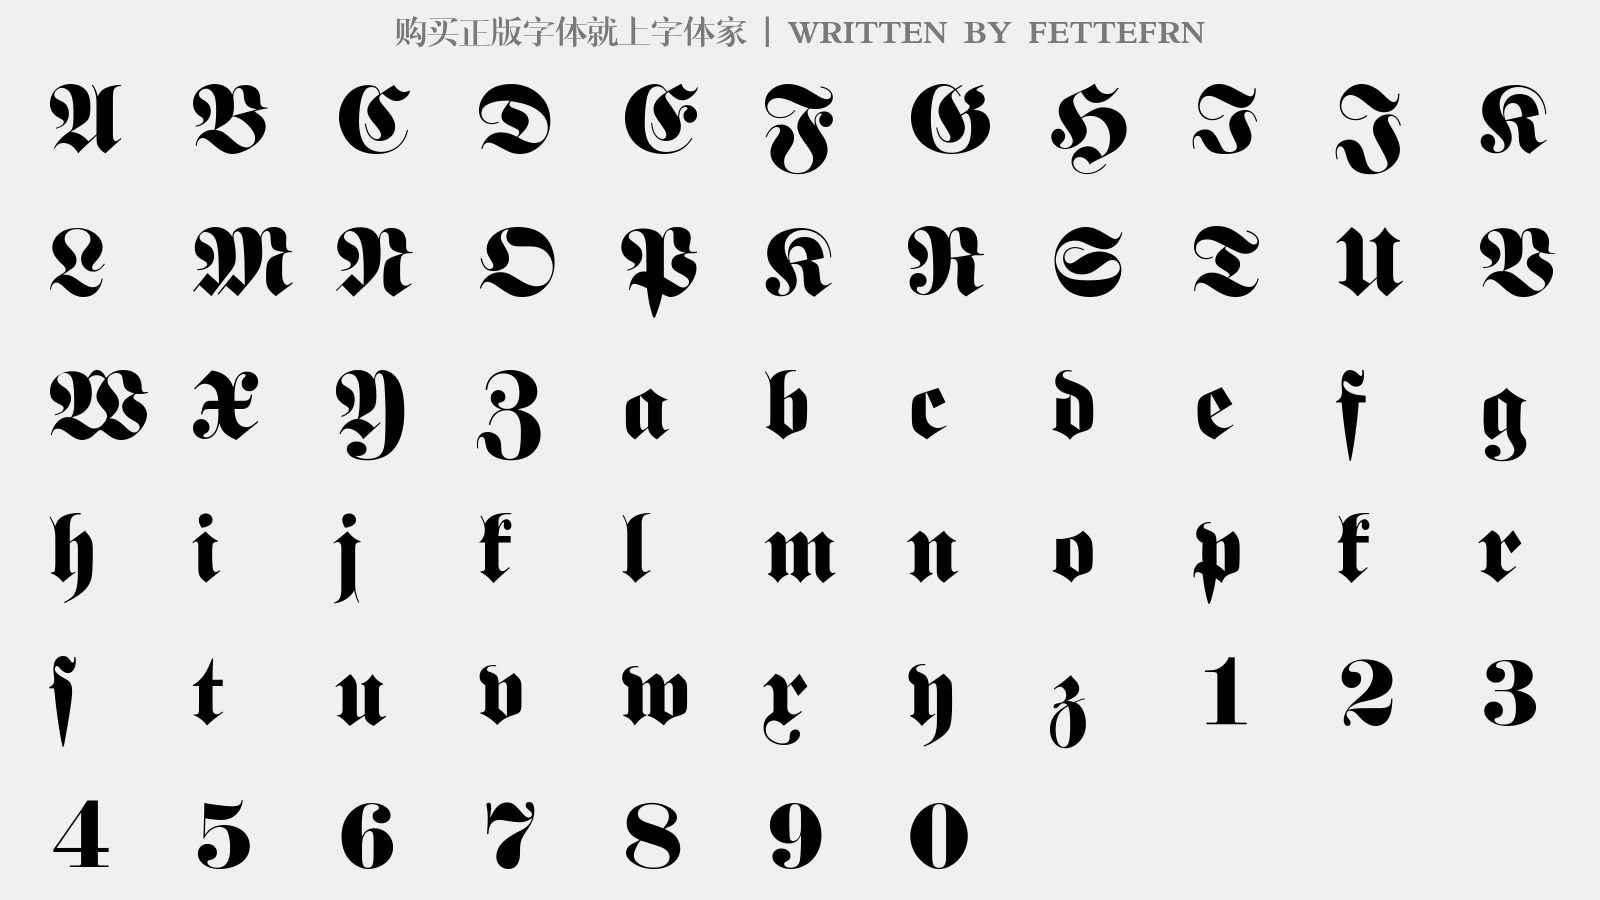 FETTEFRN - 大写字母/小写字母/数字